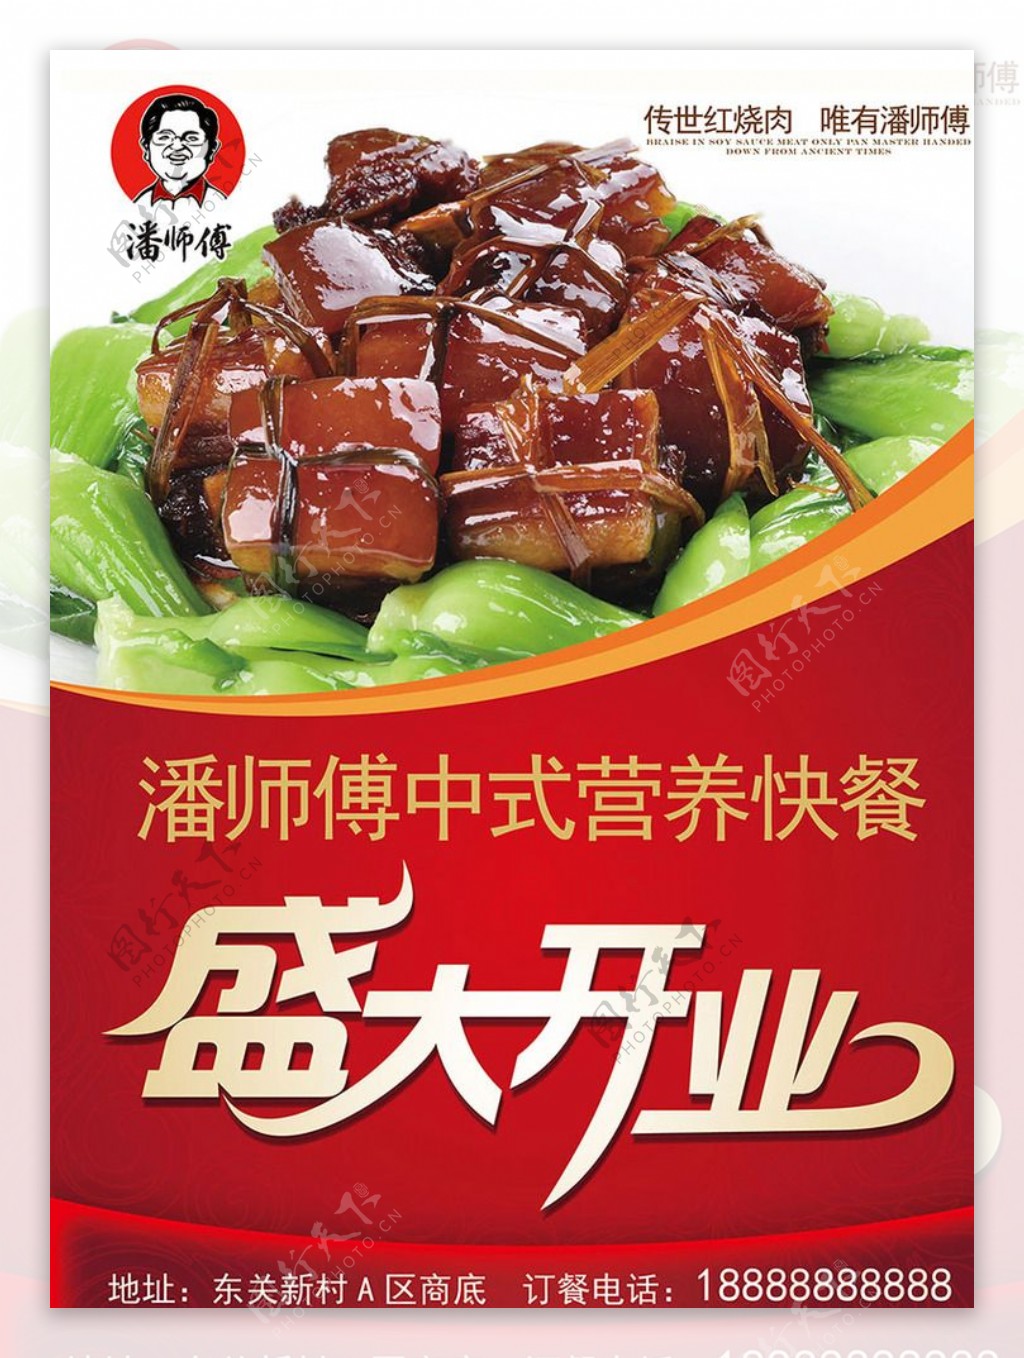 潘师傅快餐美食店宣传页图片